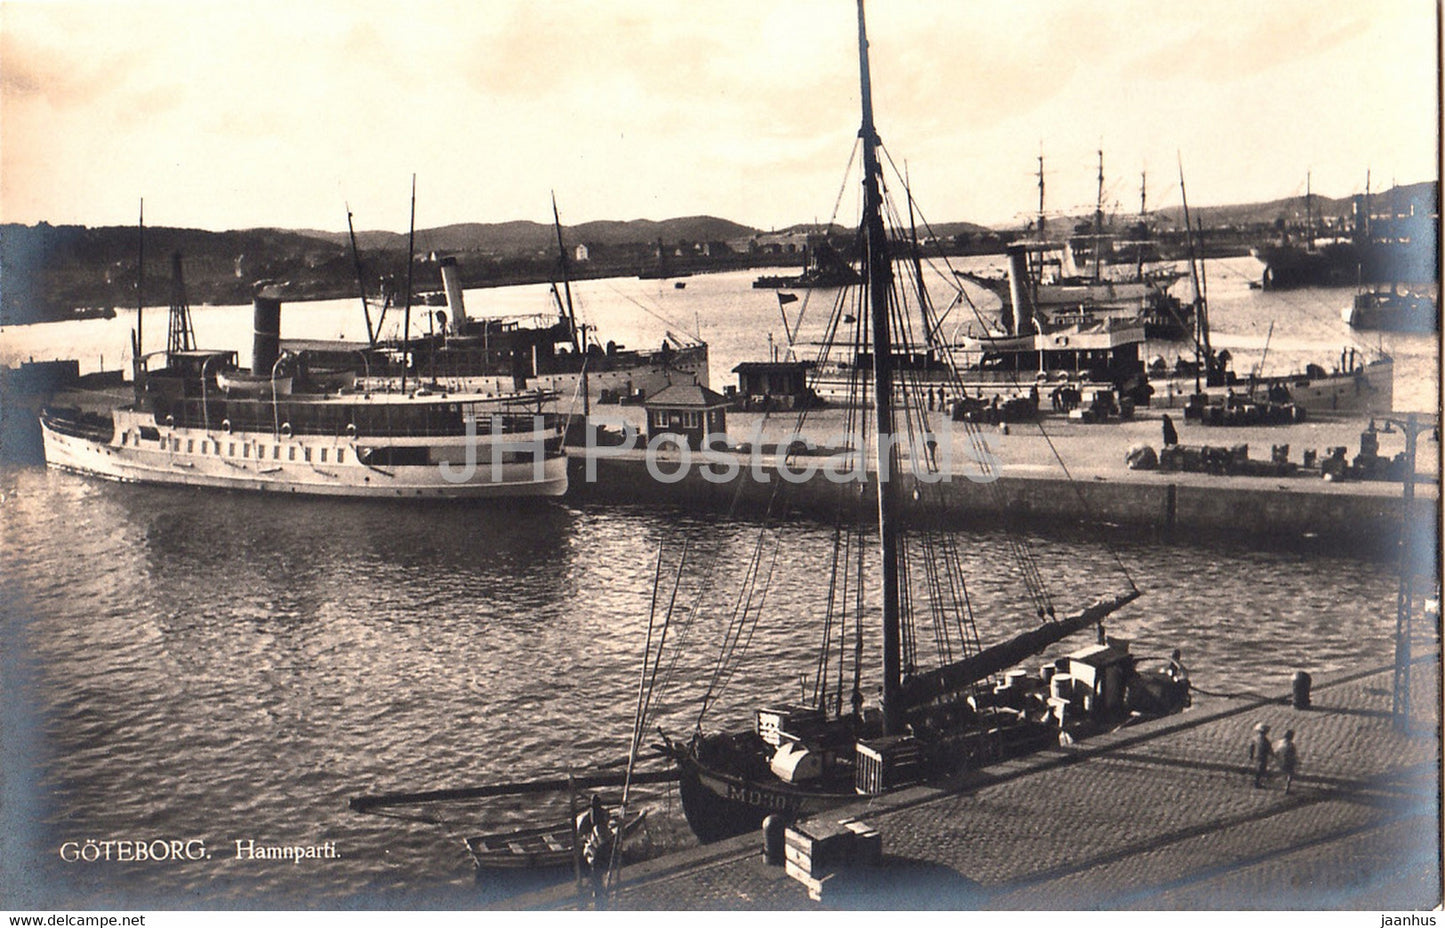 Goteborg - Hamnparti - port - steamer - ship - old postcard - Sweden - unused - JH Postcards